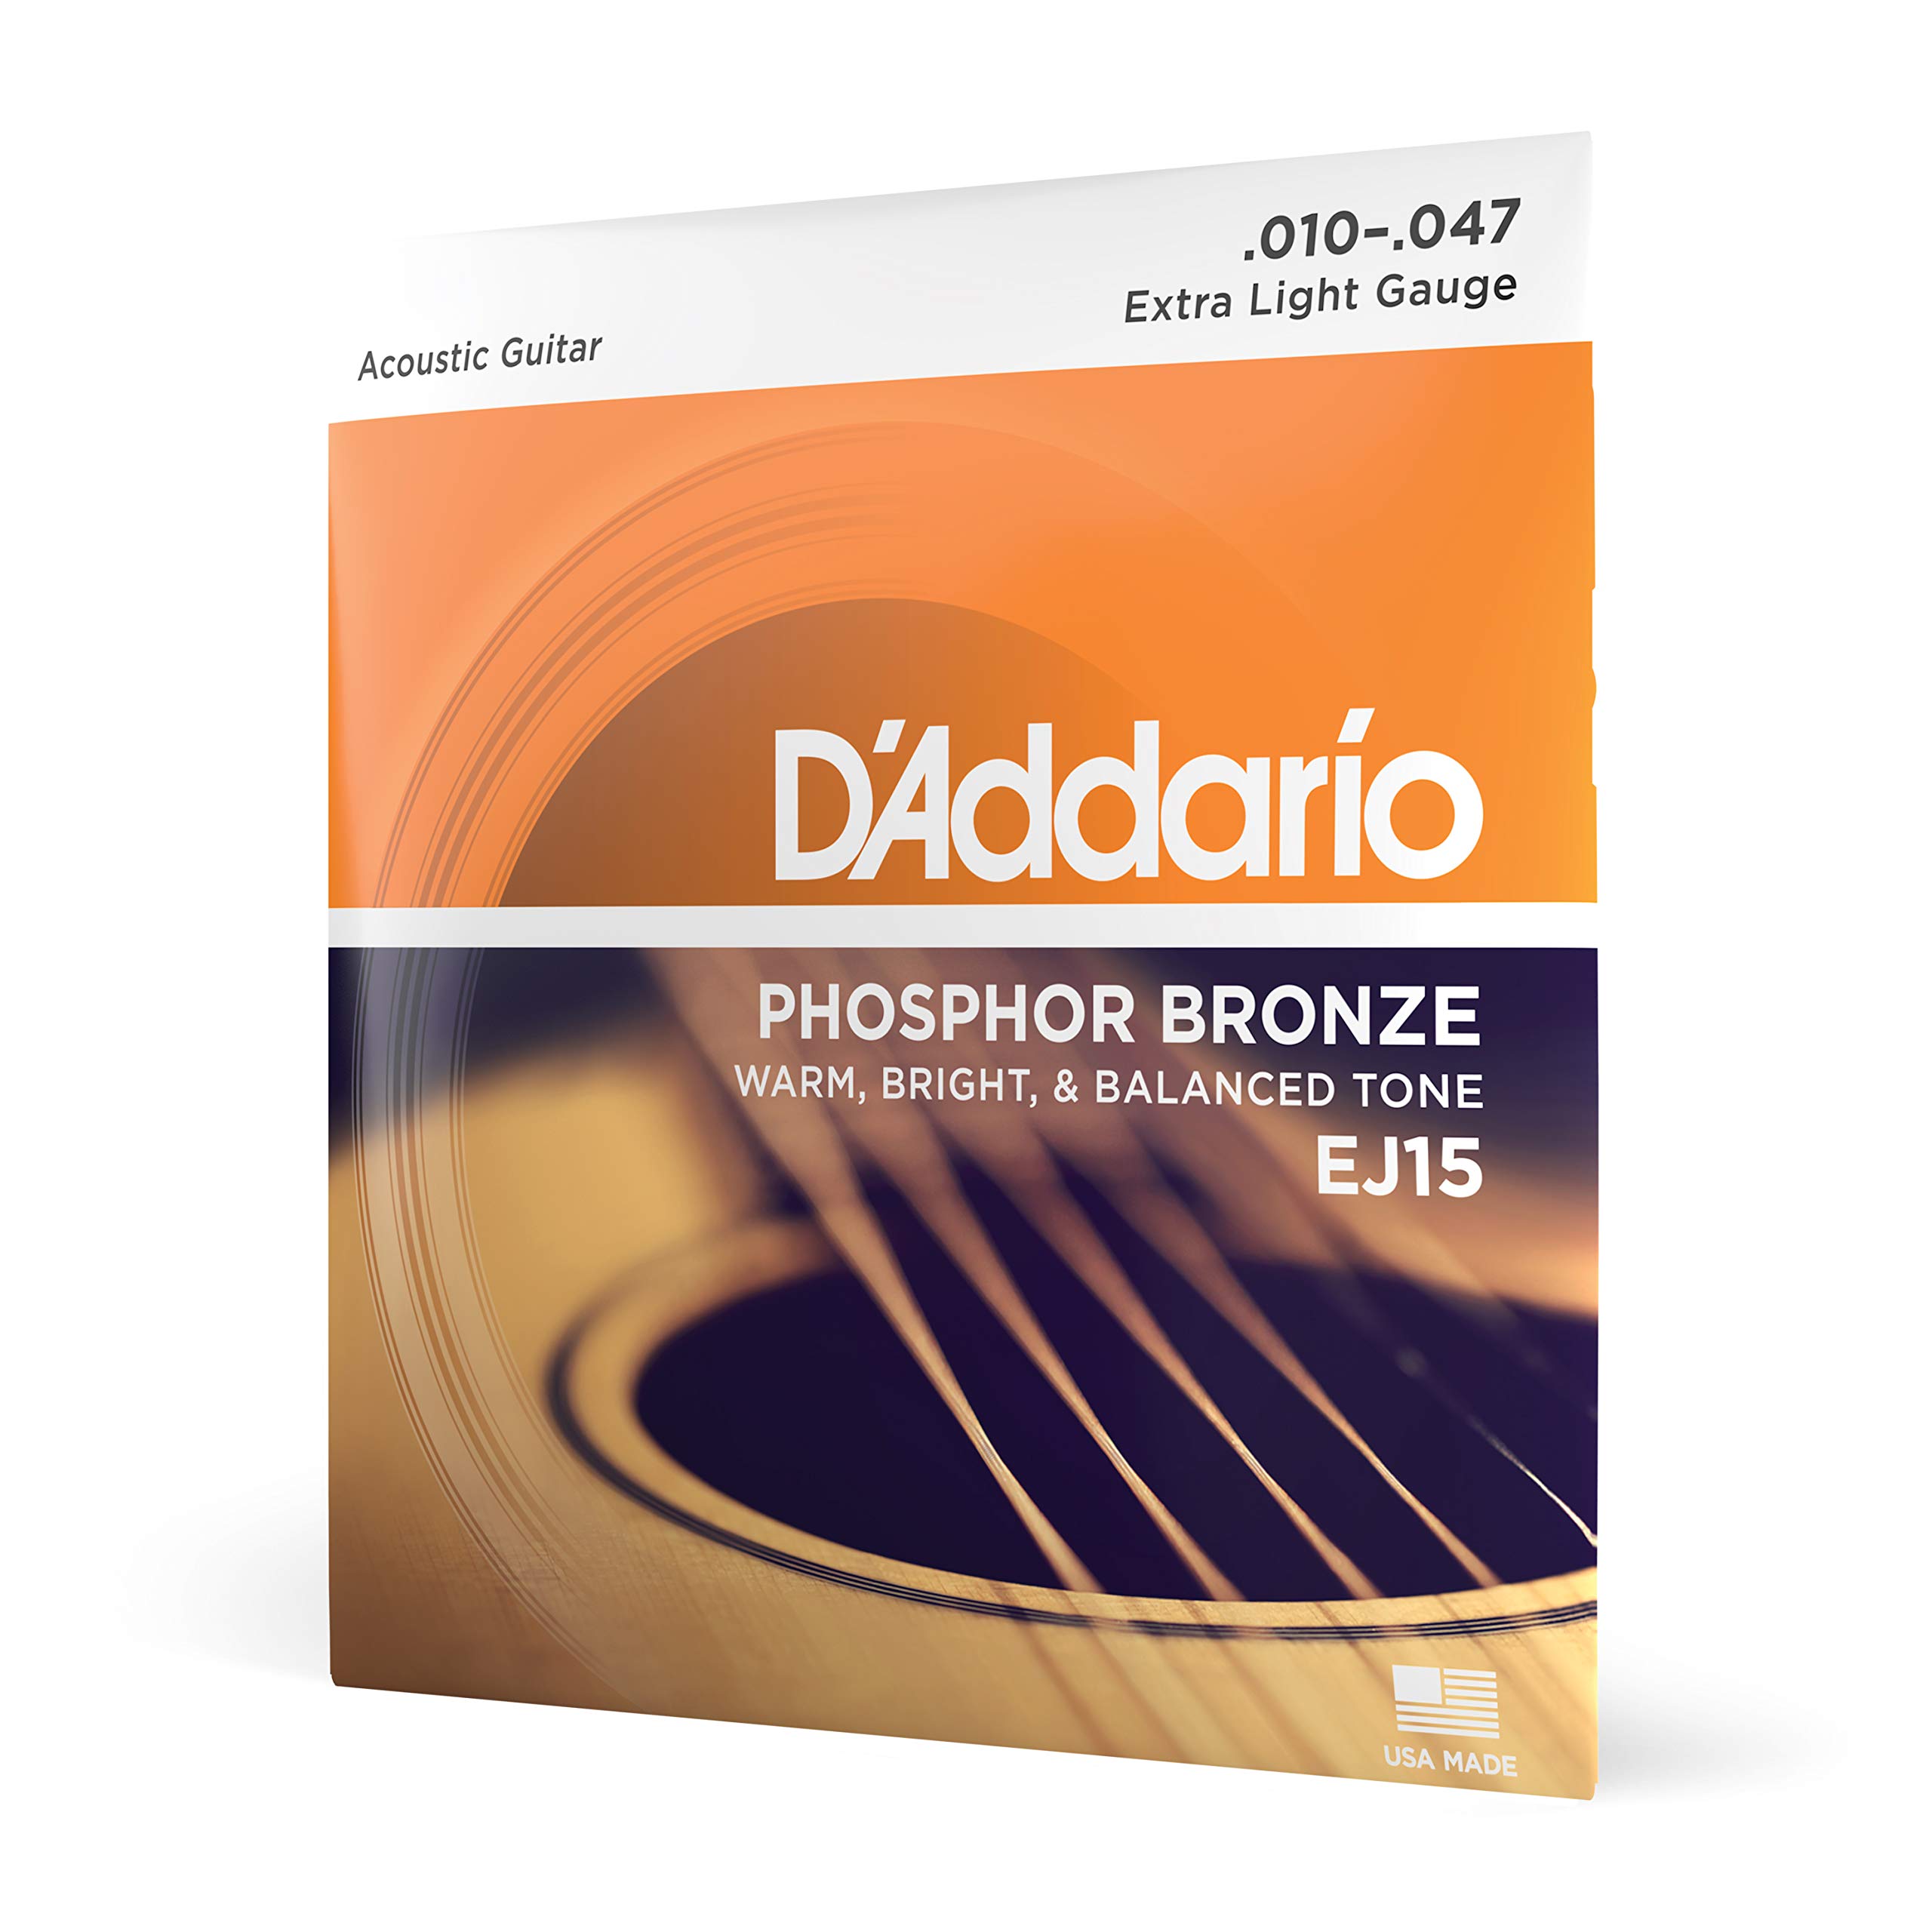 D'Addario गिटार स्ट्रिंग्स - फॉस्फोर कांस्य ध्वनिक गिटार स्ट्रिंग्स